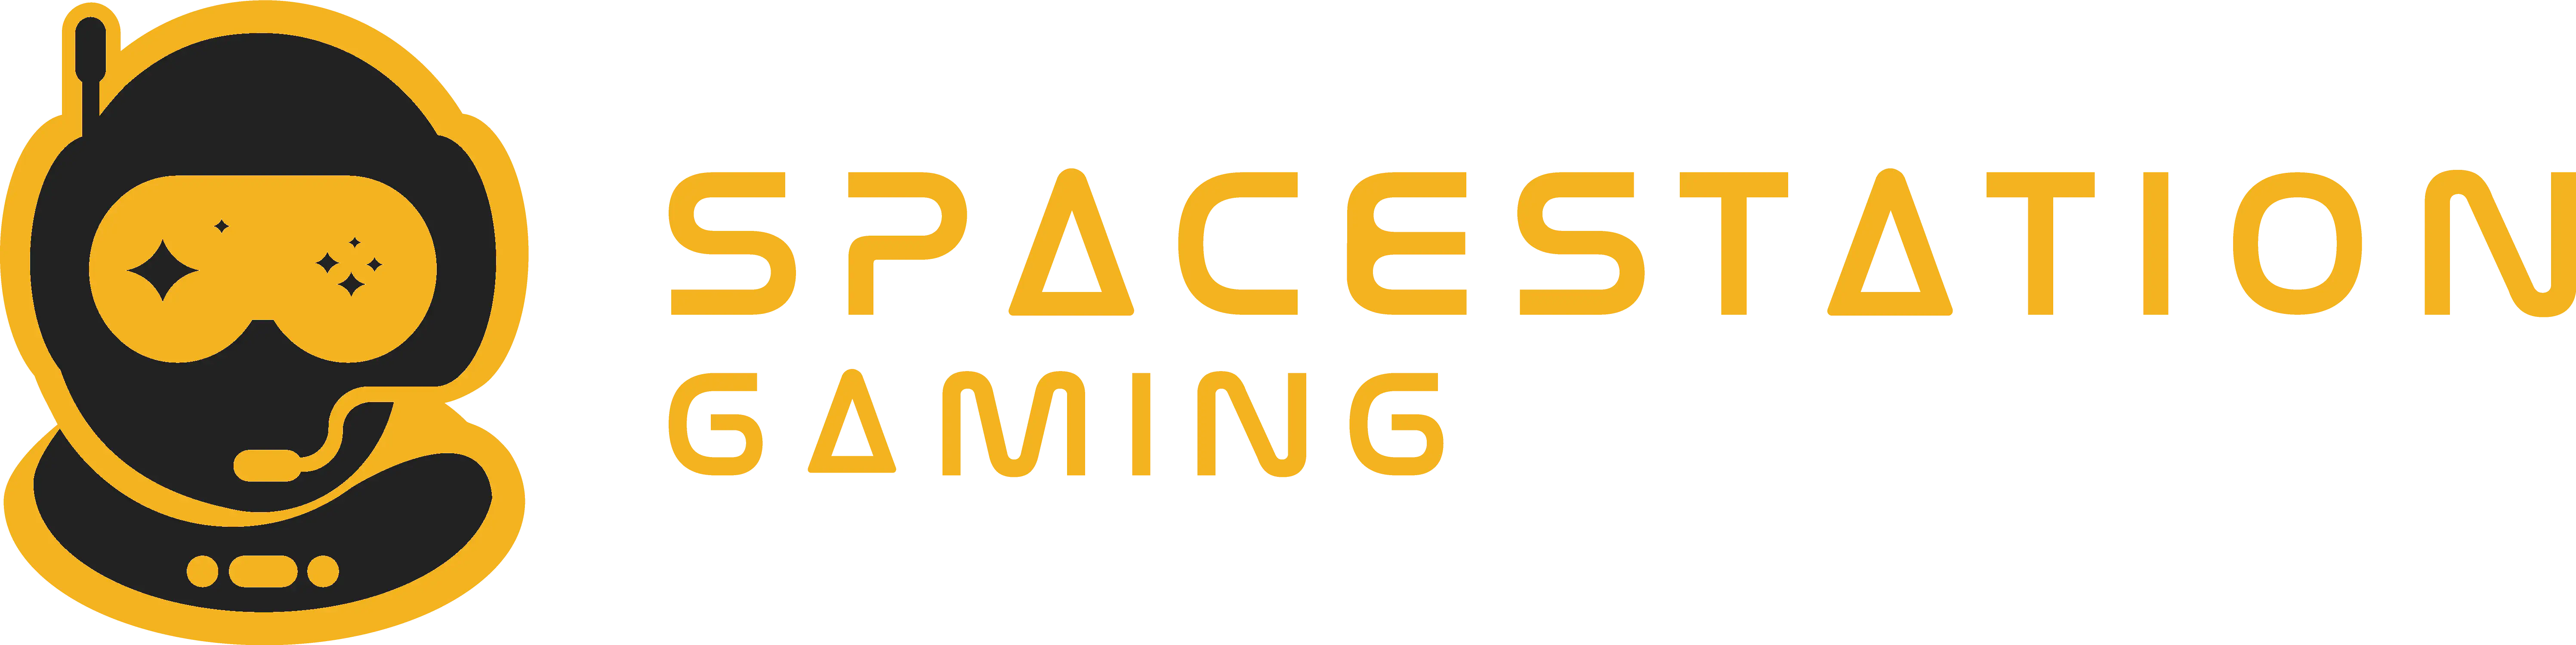 spacestation gaming uk